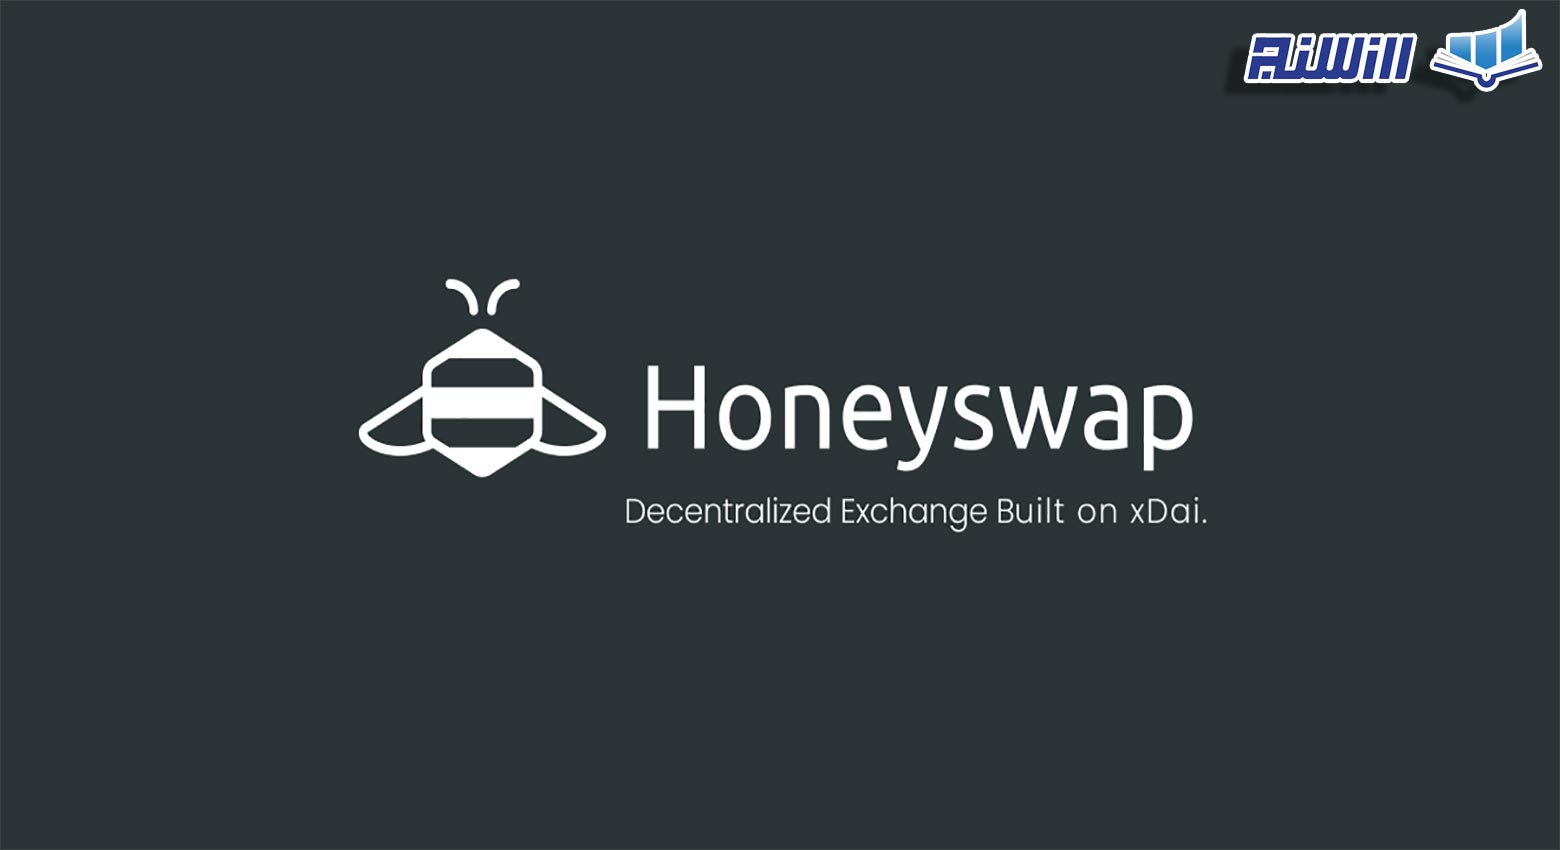 پلتفرم هانی سواپ HoneySwap